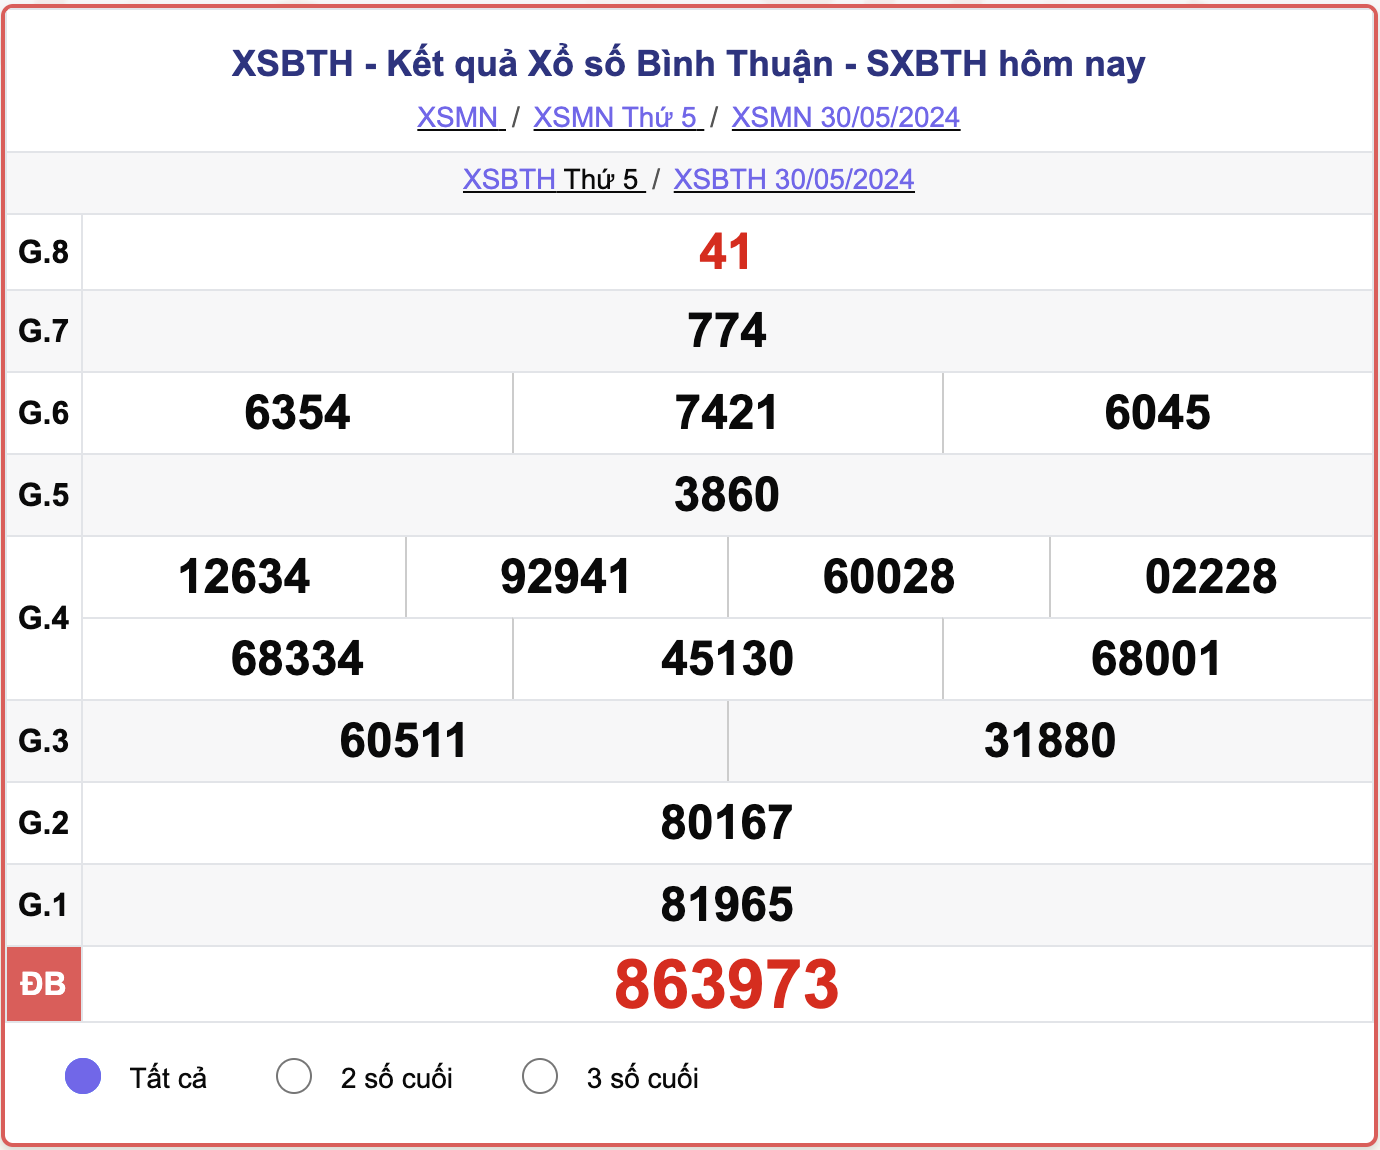 XSBTH thứ Năm, kết quả xổ số Bình Thuận ngày 30/5/2024.